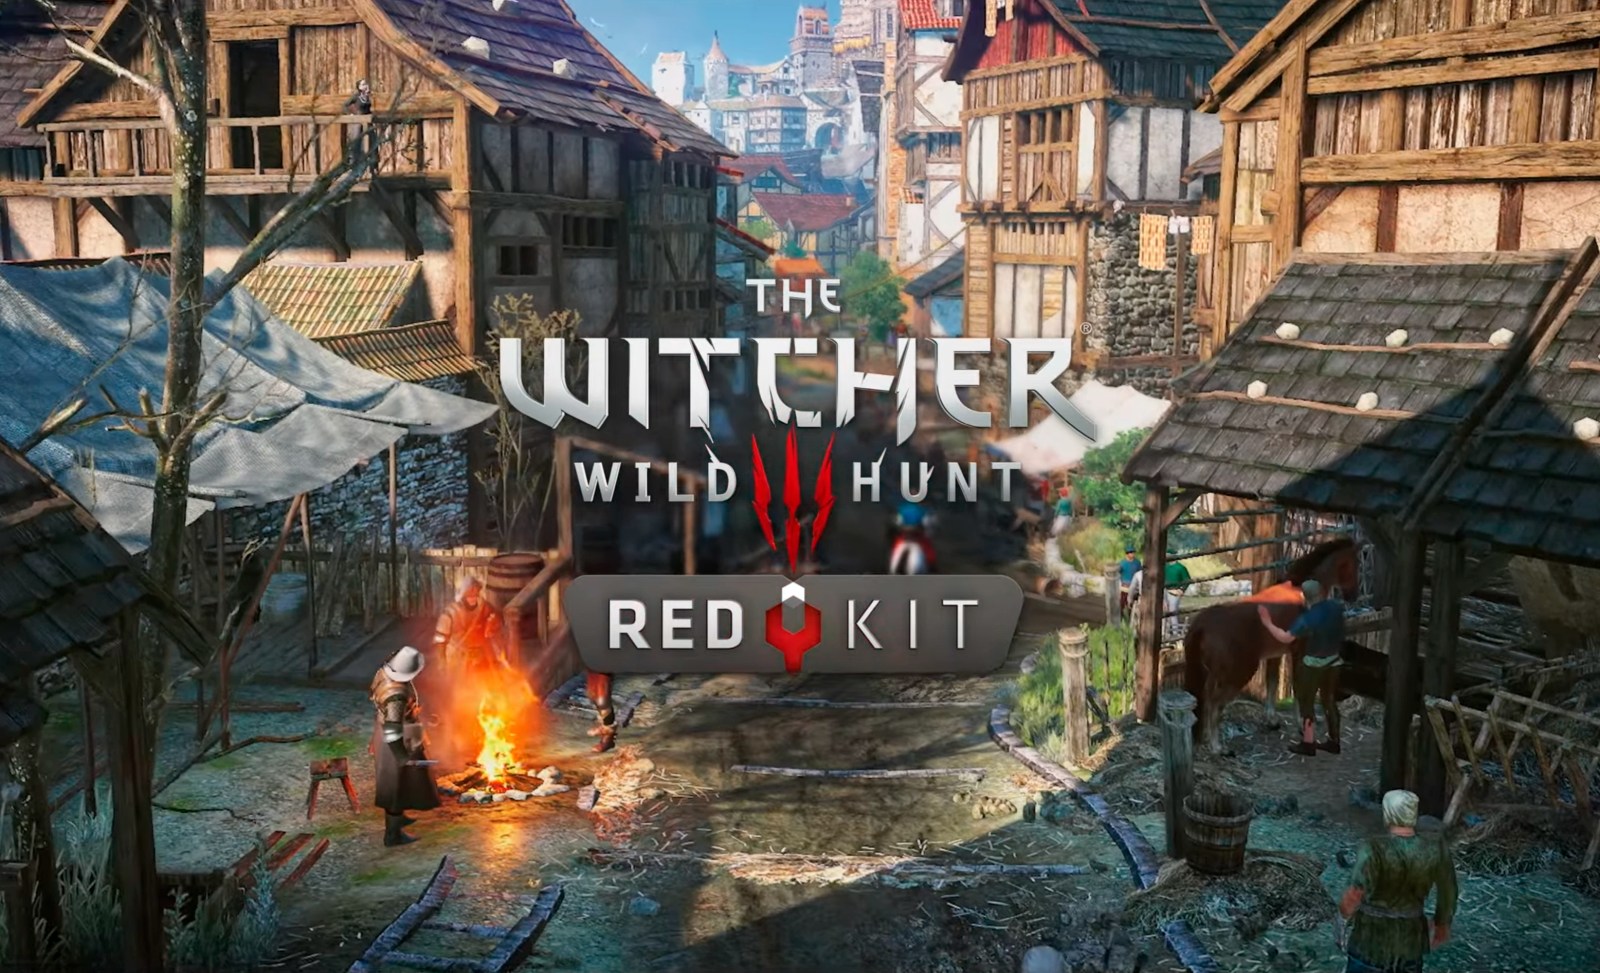 Zeg ja tegen mods: CD Projekt RED brengt officiële modding toolkit uit voor The Witcher 3